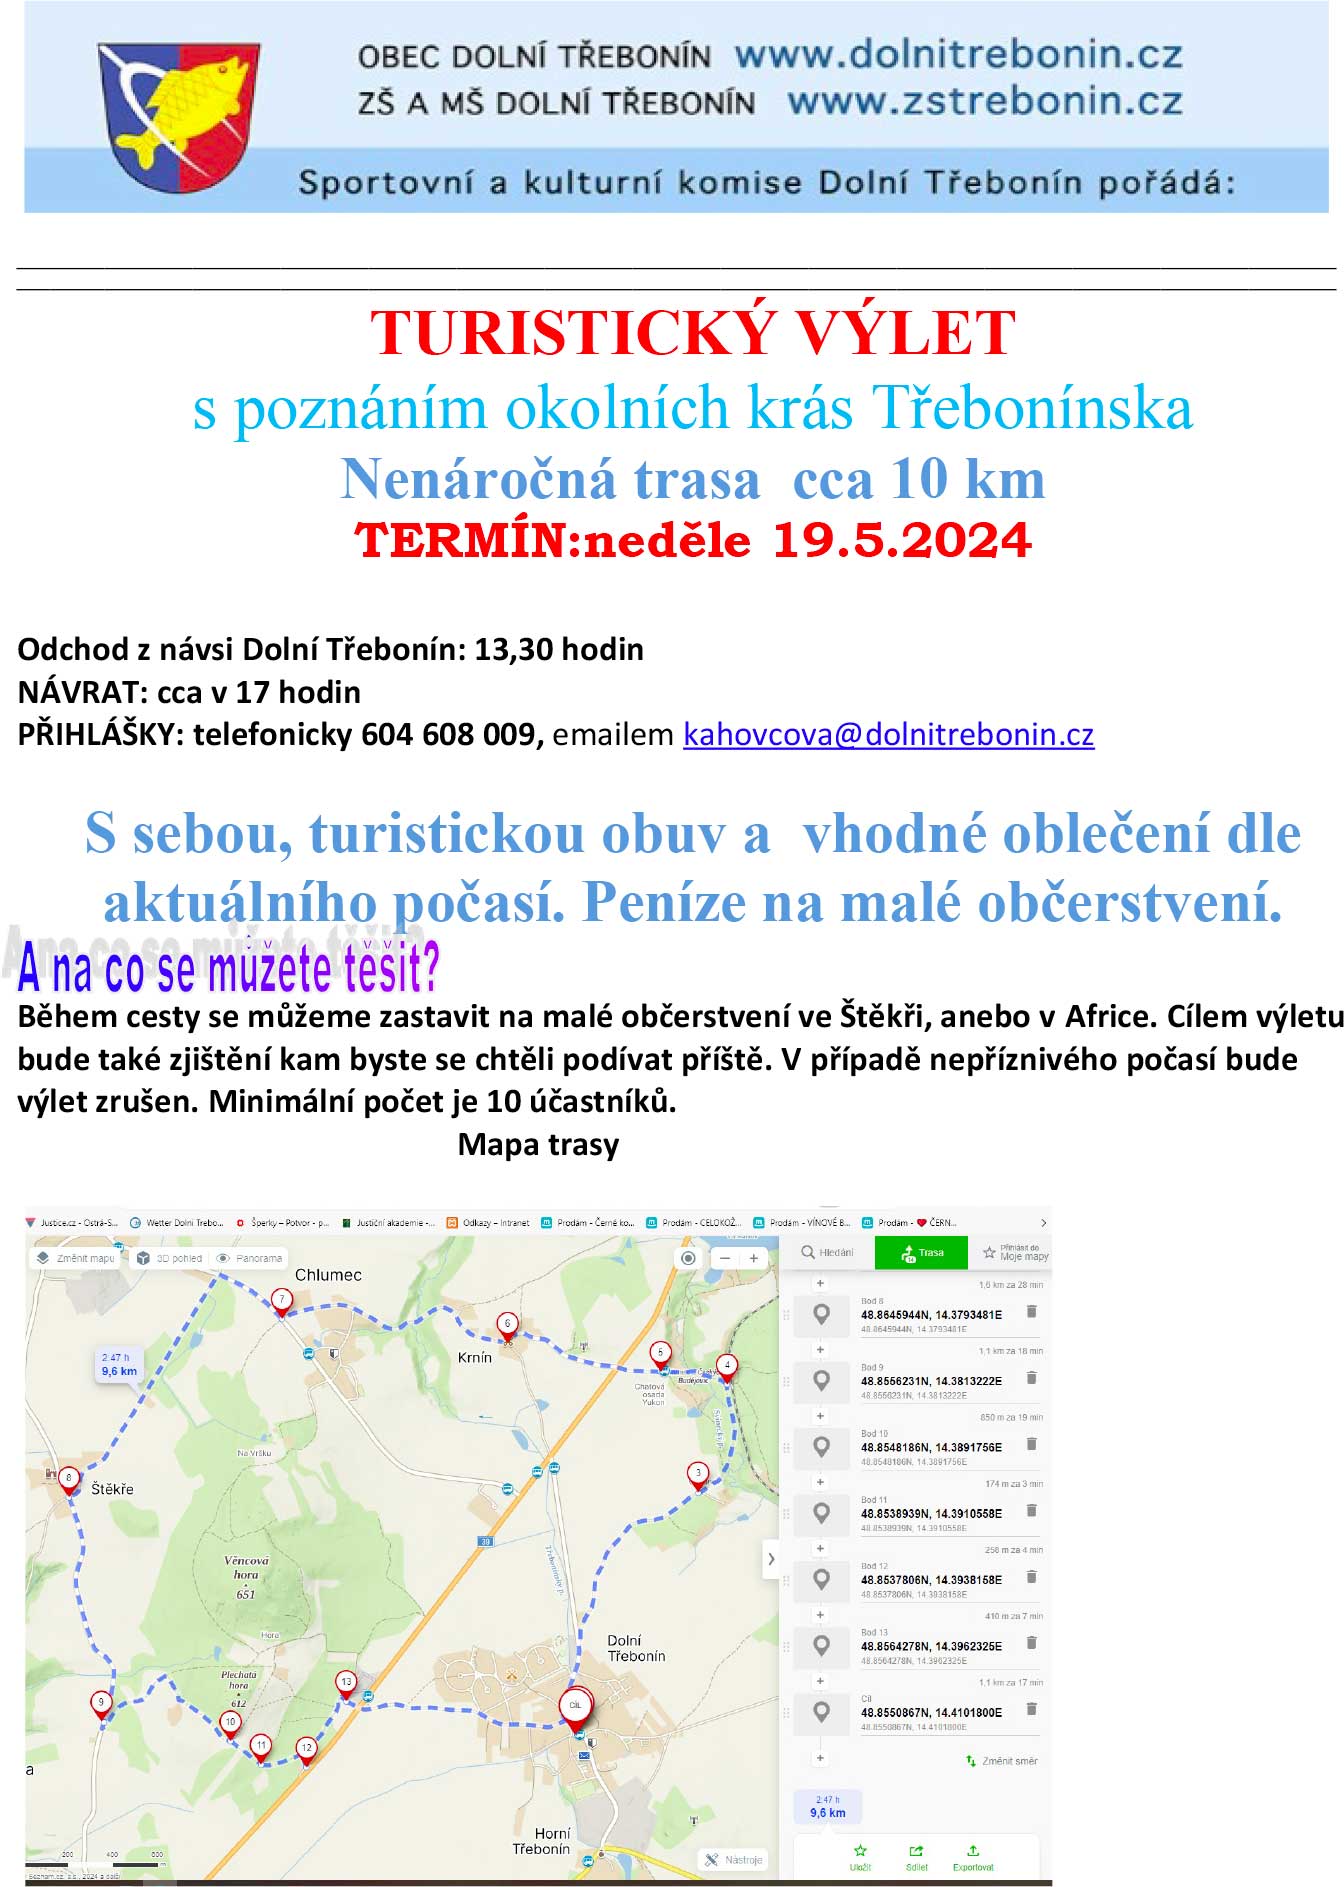 Turistický výlet s poznáním okolních krás Třebonínska 19. 5. 2024